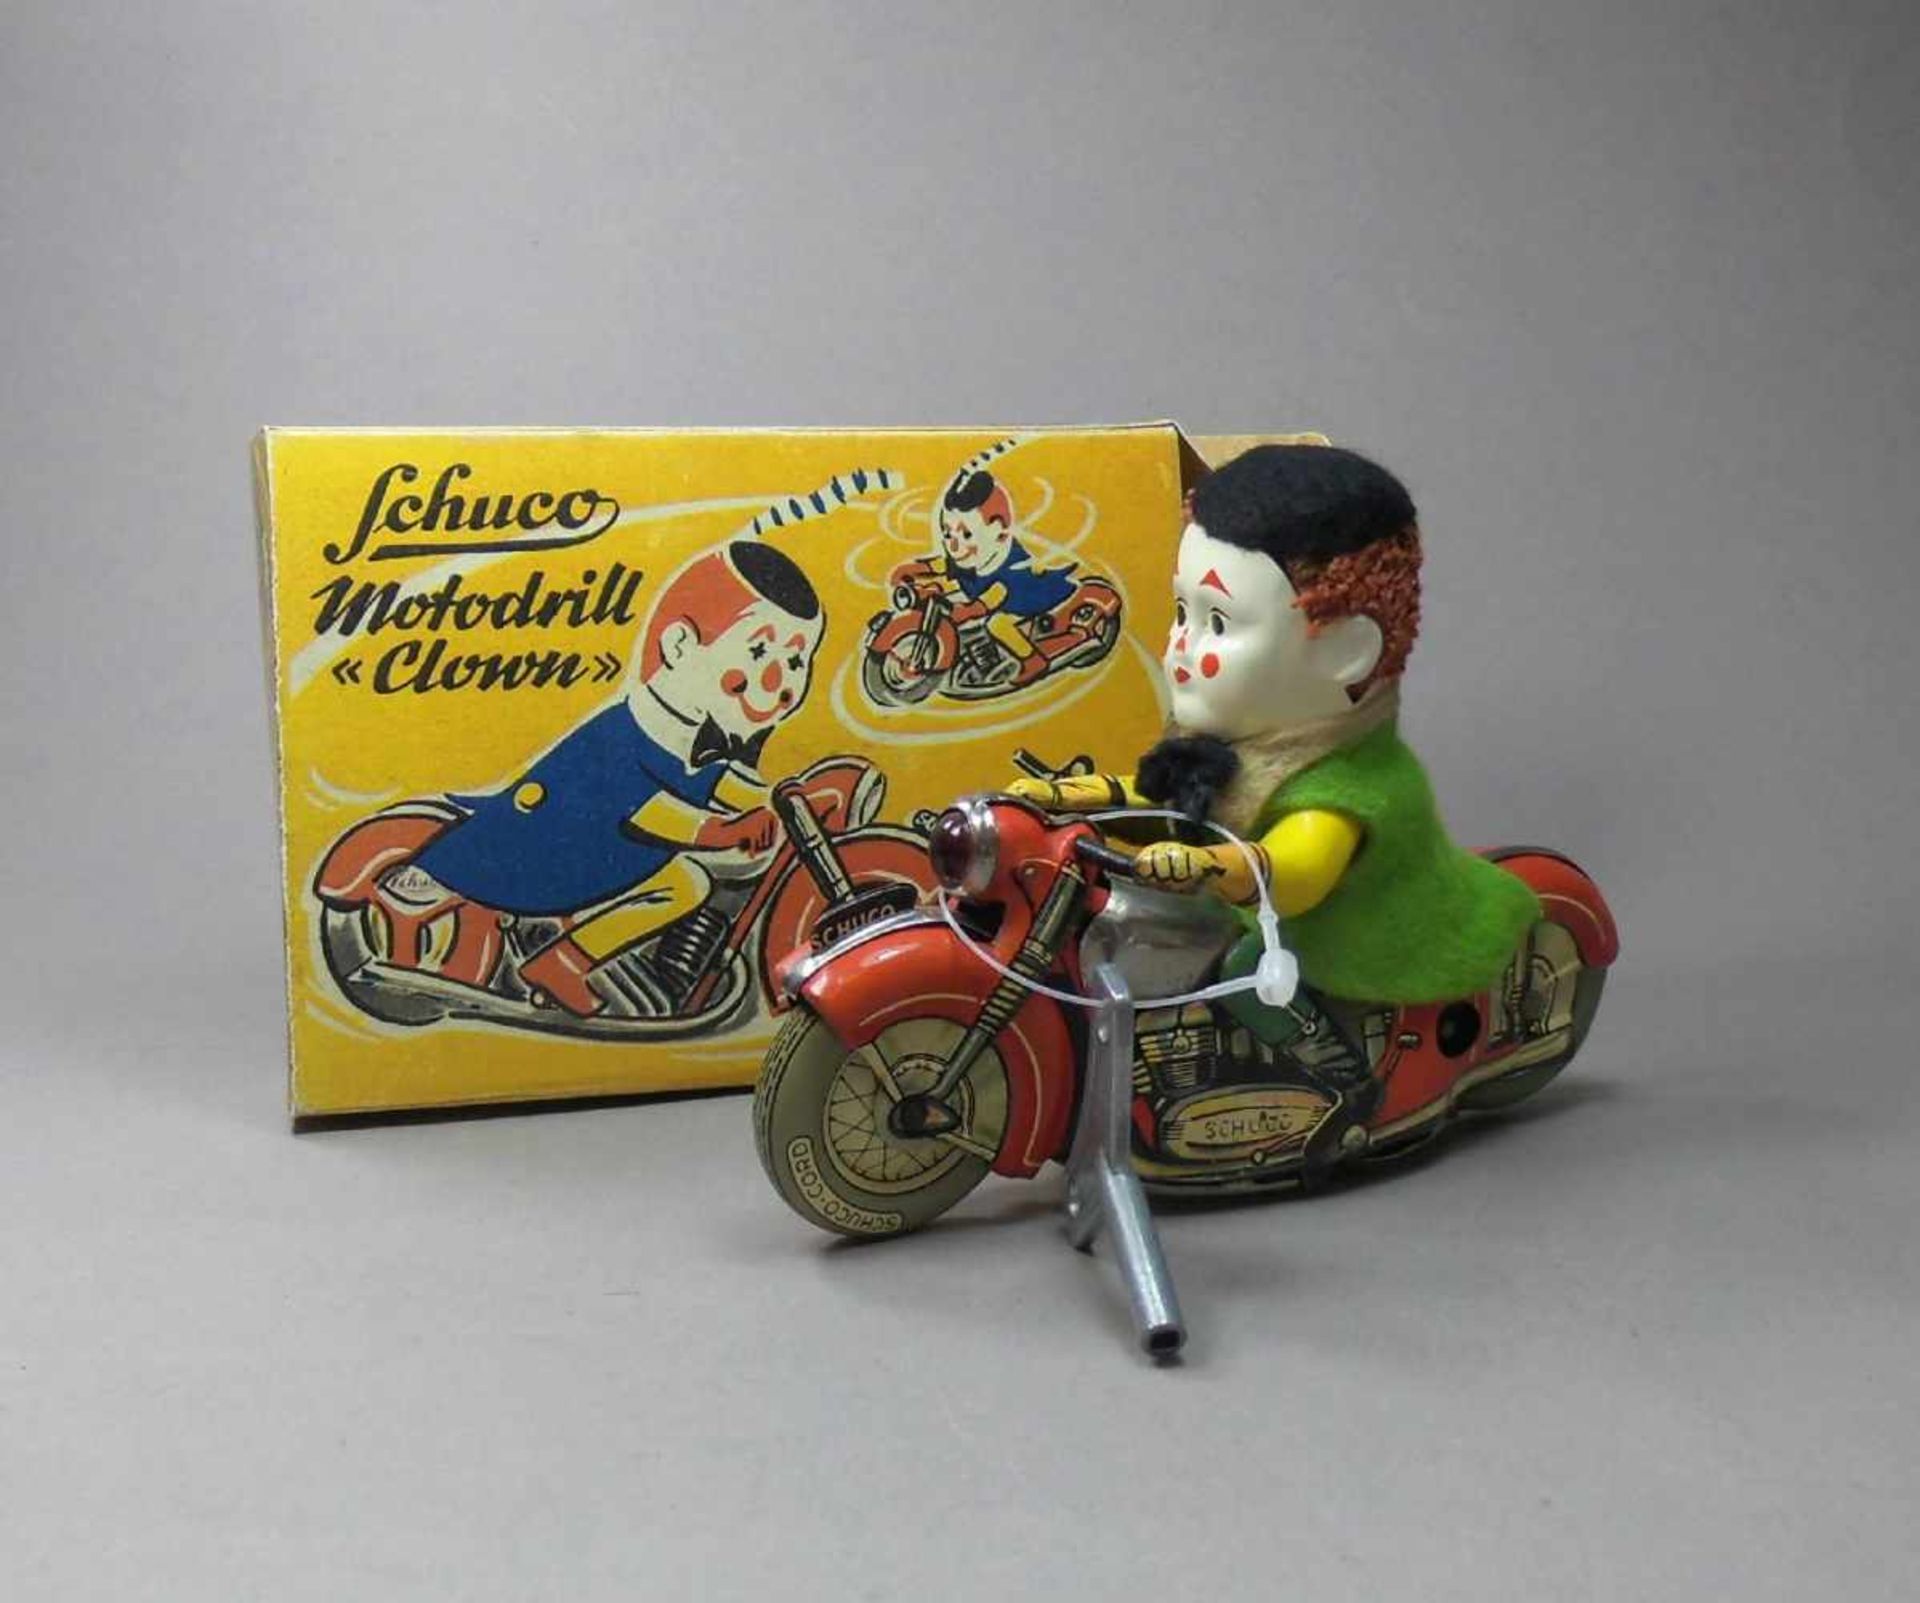 SPIELZEUG / BLECHSPIELZEUG: Motodrill "Clown" / tin toy clown, 1950er Jahre, Manufaktur Schuco /